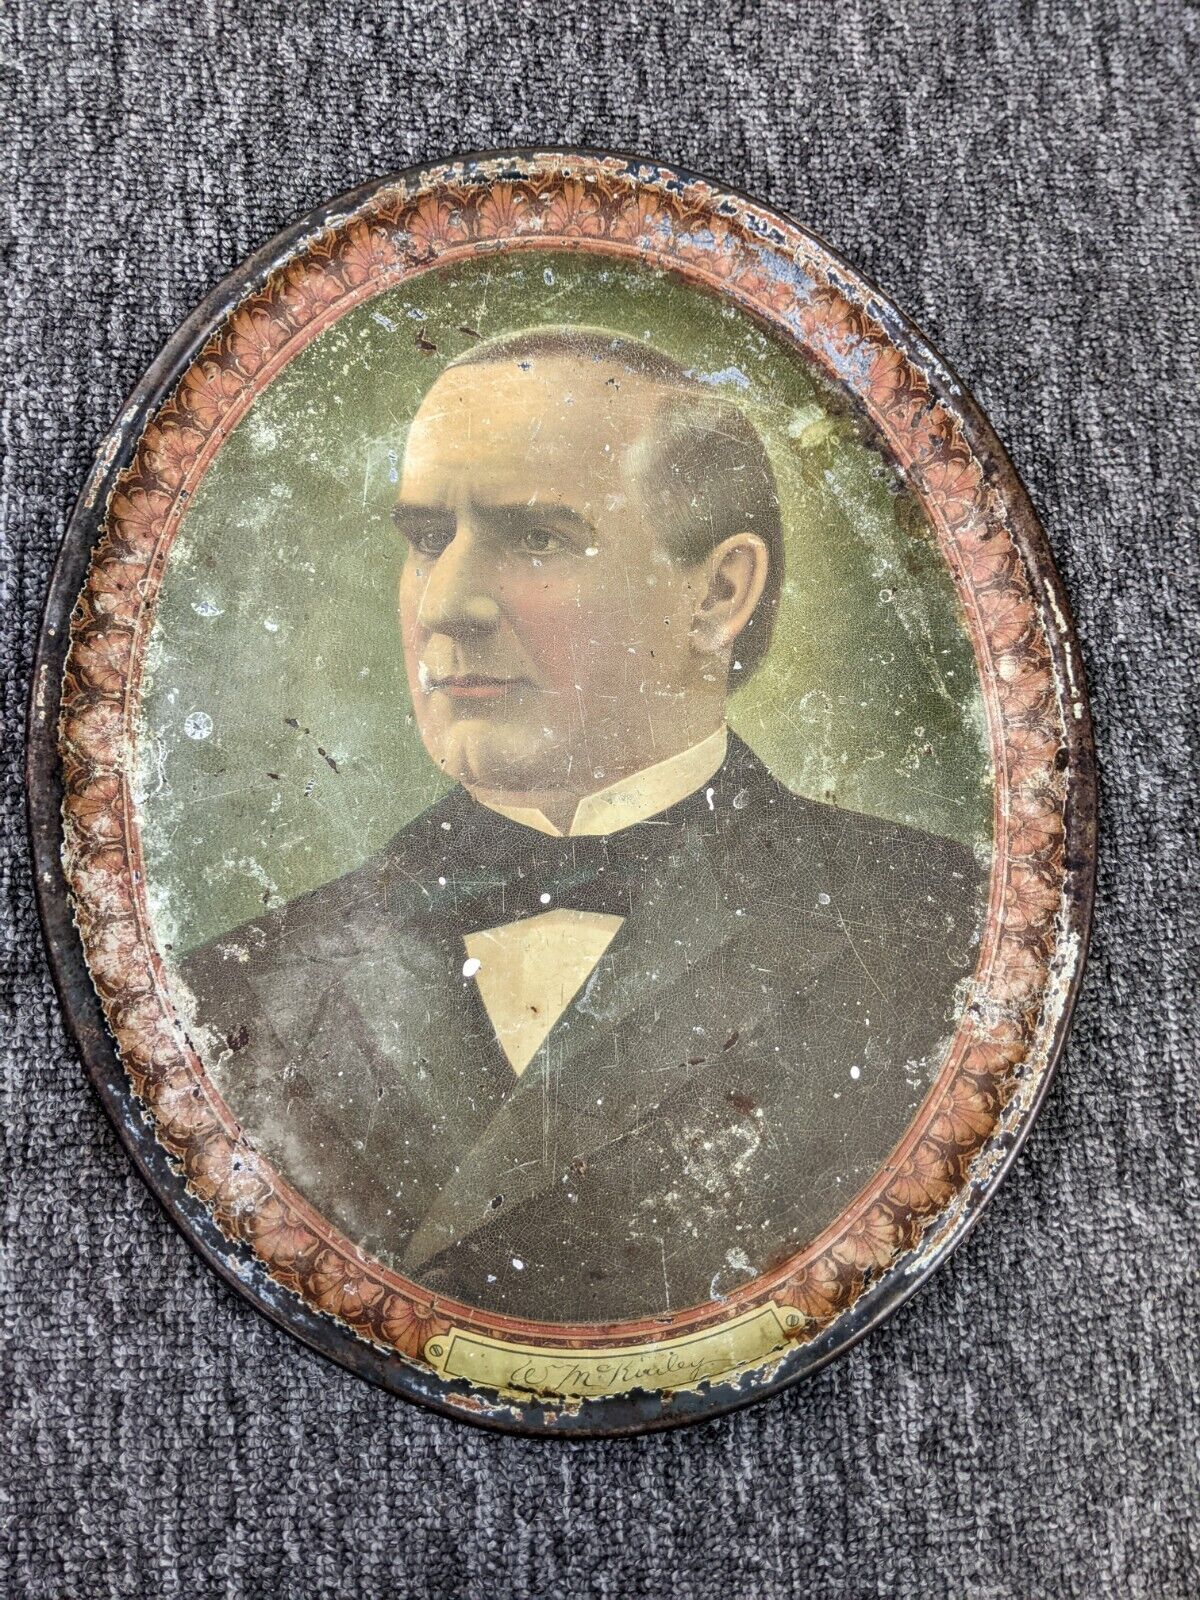 William McKinley Commemorative Campaign Tray circa 1896 - 1900